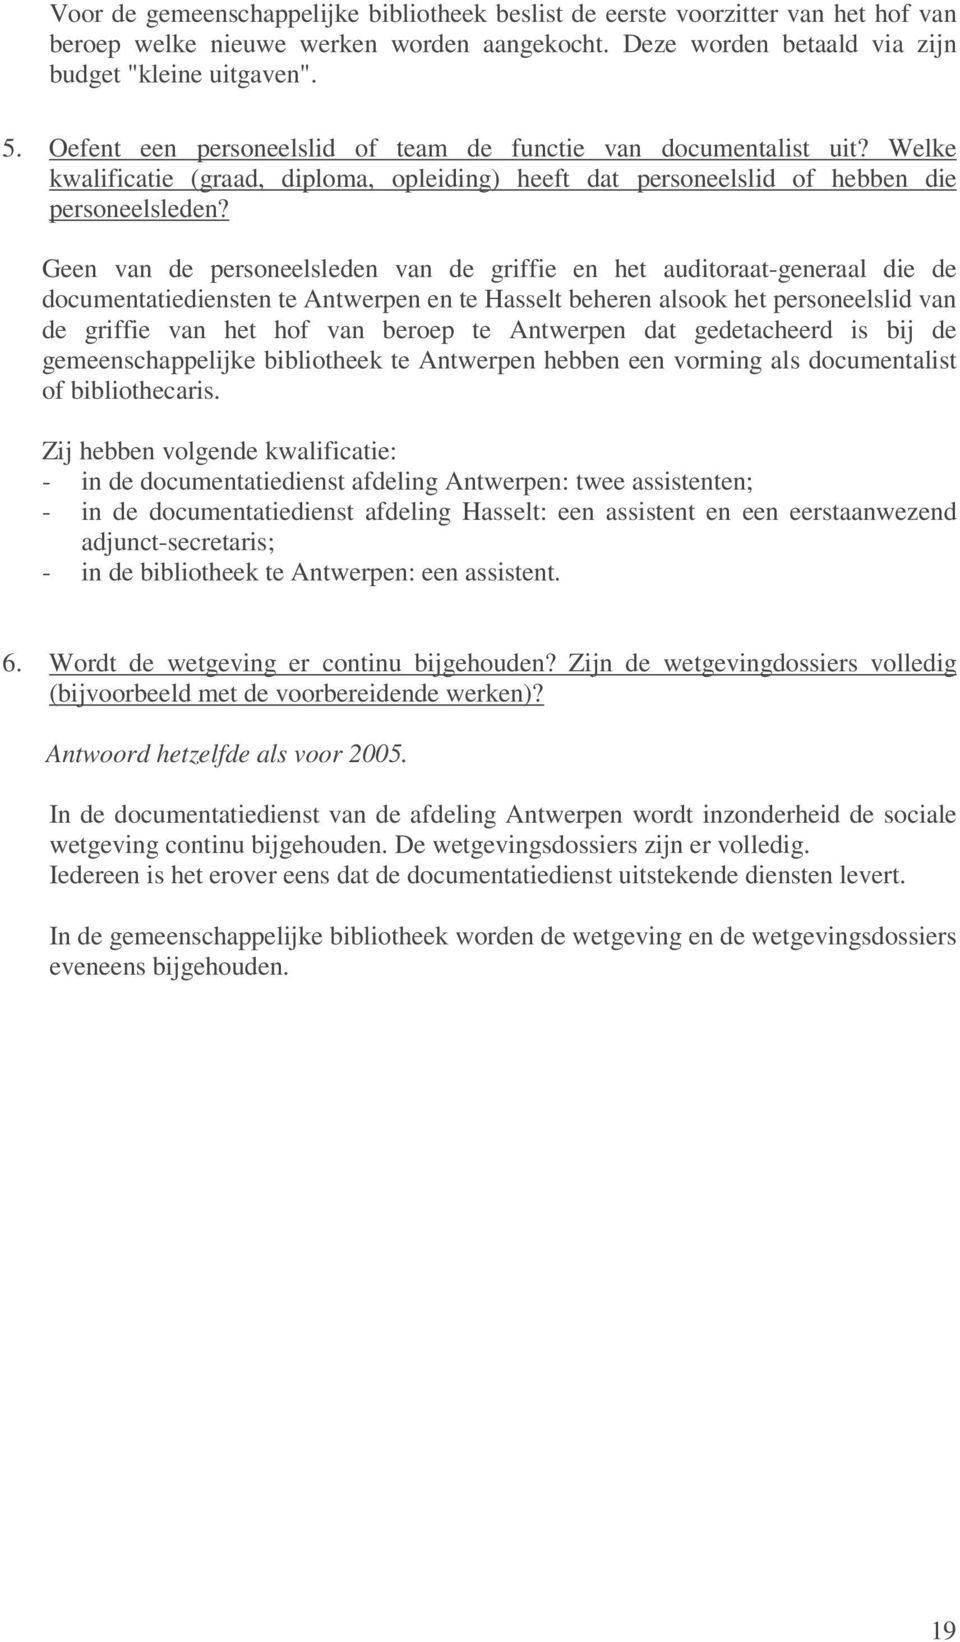 Geen van de personeelsleden van de griffie en het auditoraat-generaal die de documentatiediensten te Antwerpen en te Hasselt beheren alsook het personeelslid van de griffie van het hof van beroep te